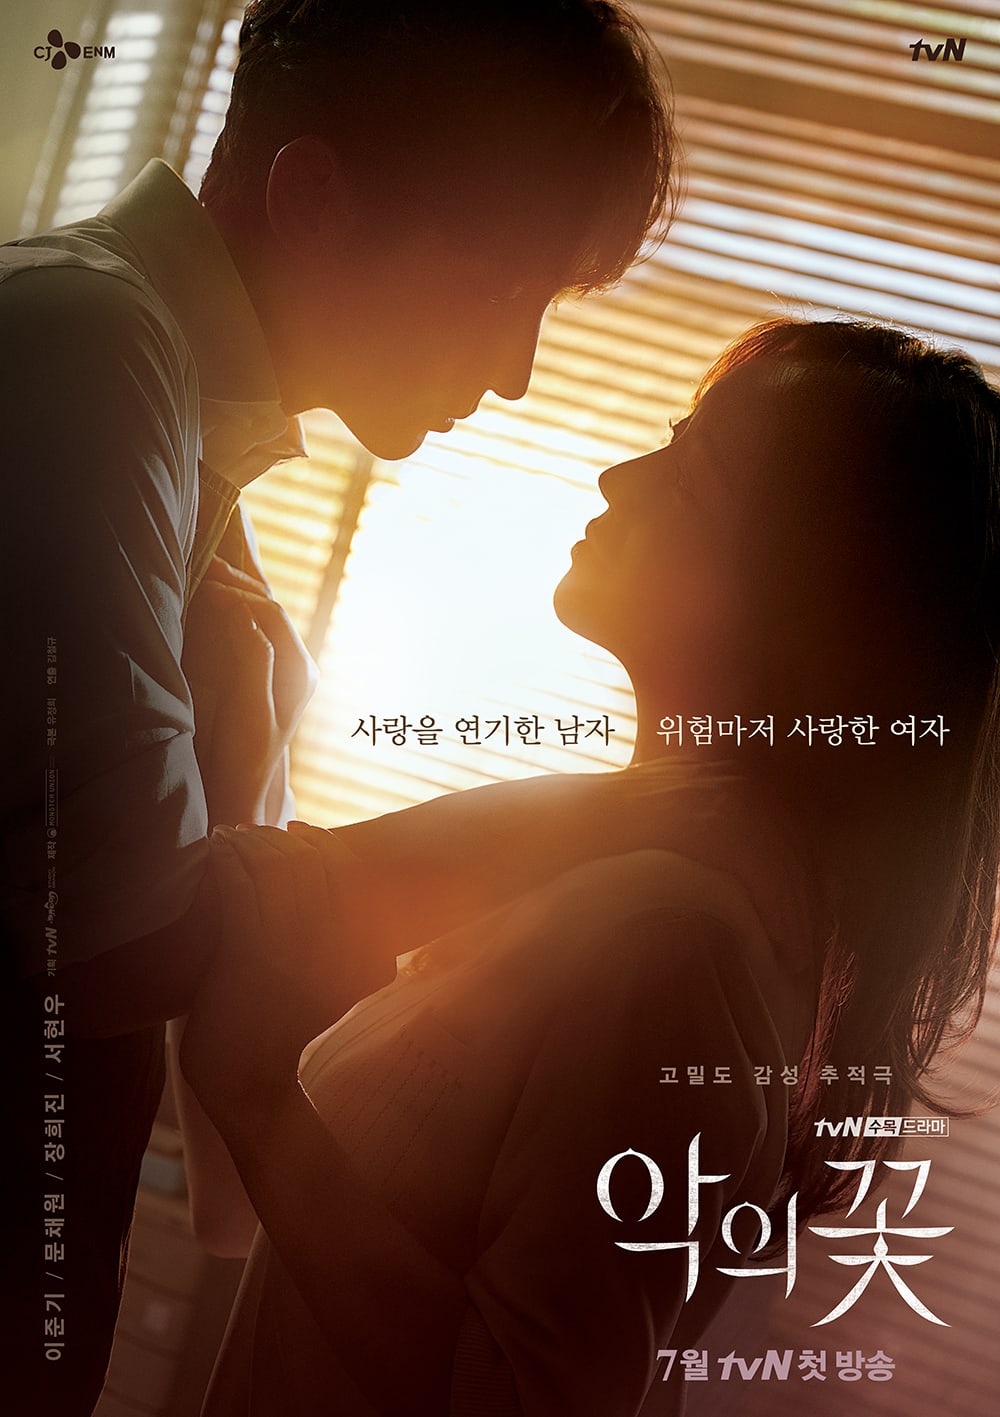 Flower of Evil ซีรีย์เกาหลีสนุก ใน VIU เรื่องราวความรักที่เปลี่ยนเป็นความสะพรึงที่เพิ่มขึ้นทุกวัน